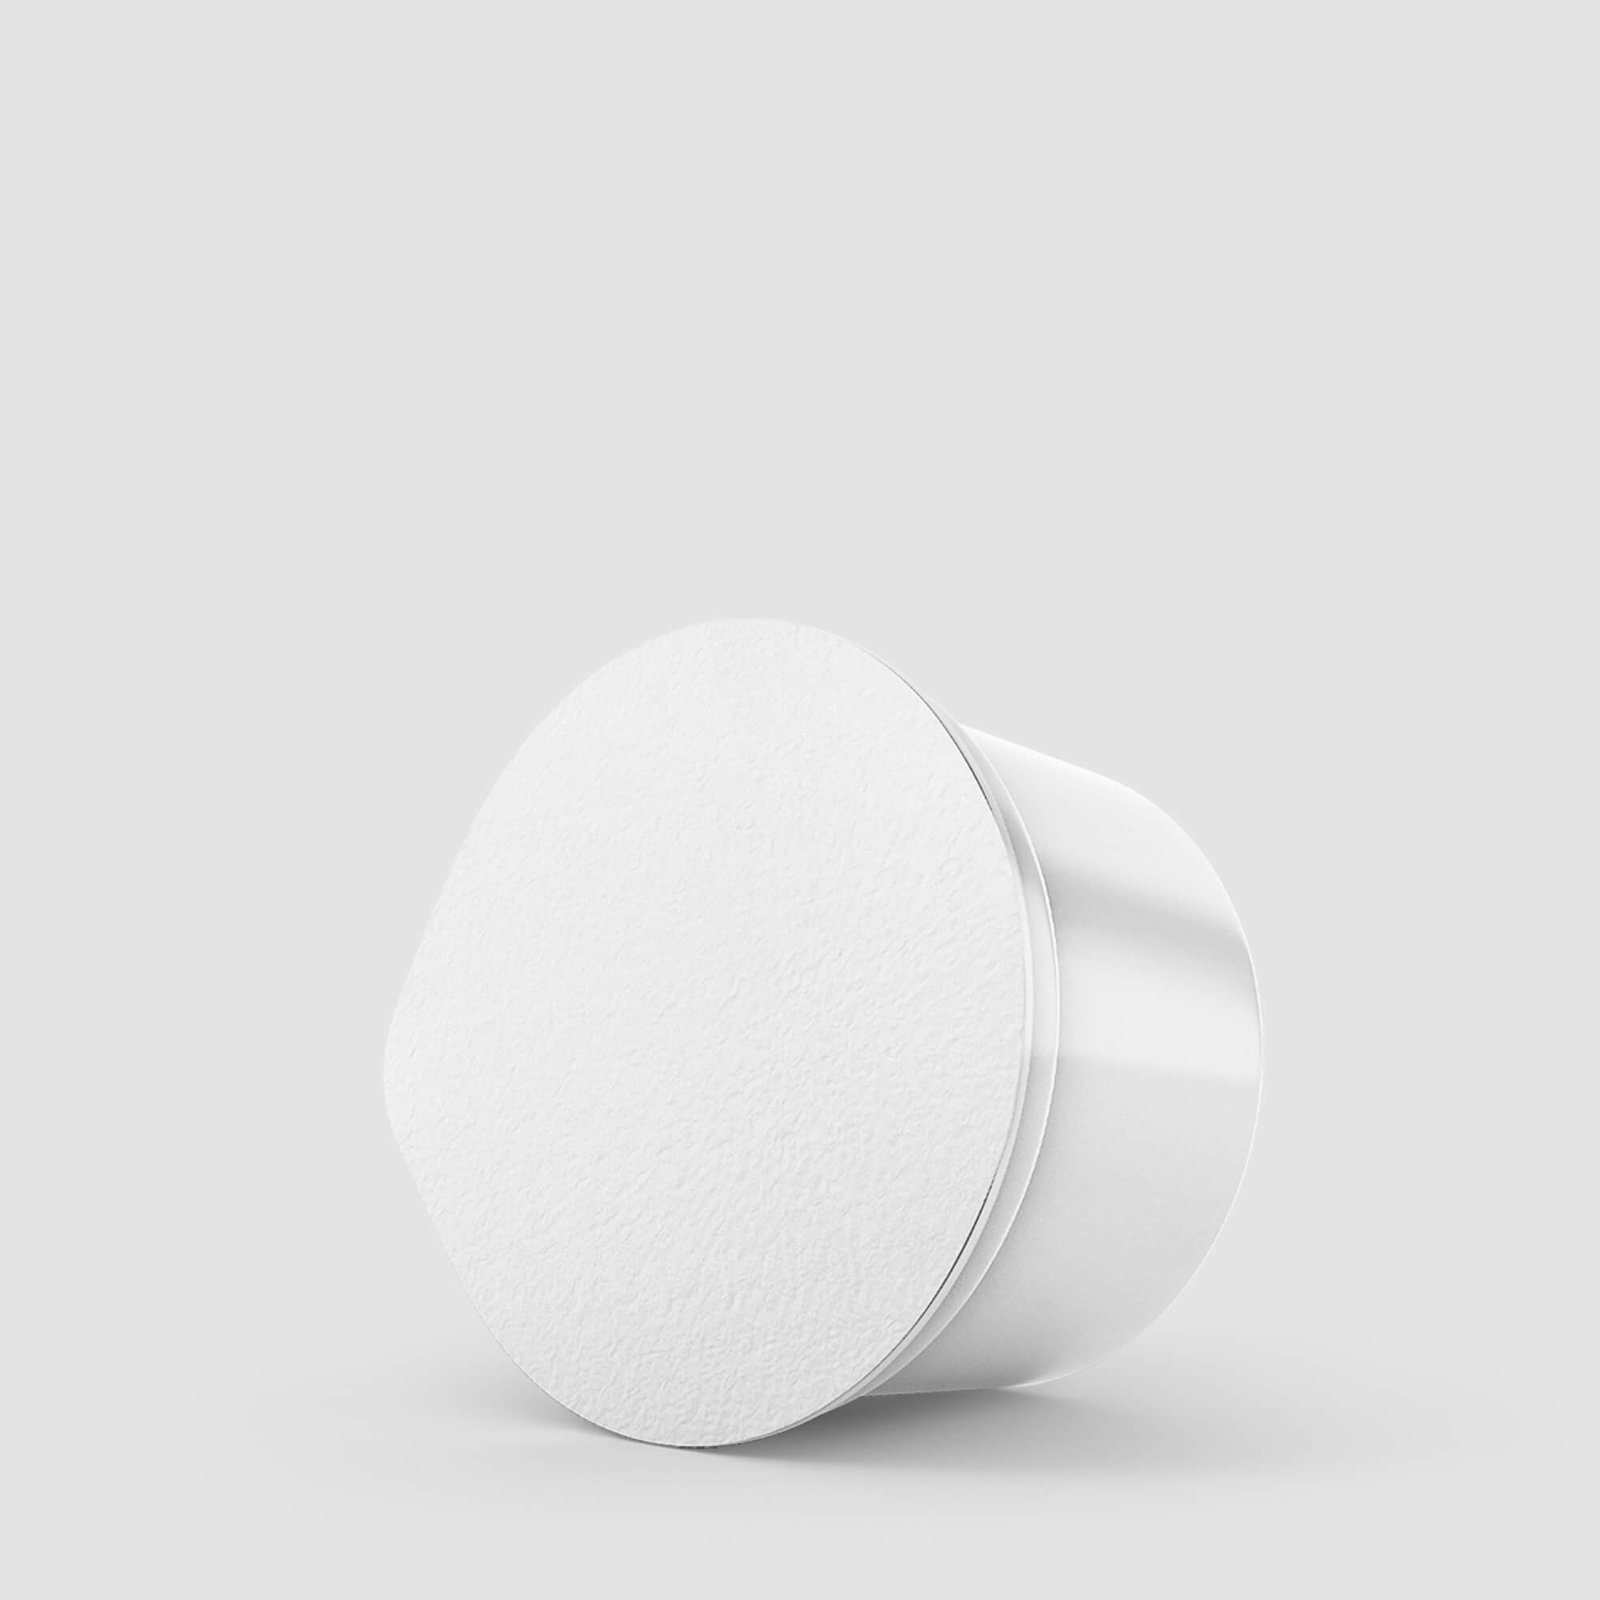 Blank Free Yogurt Packaging Mockup PSD Template (1)